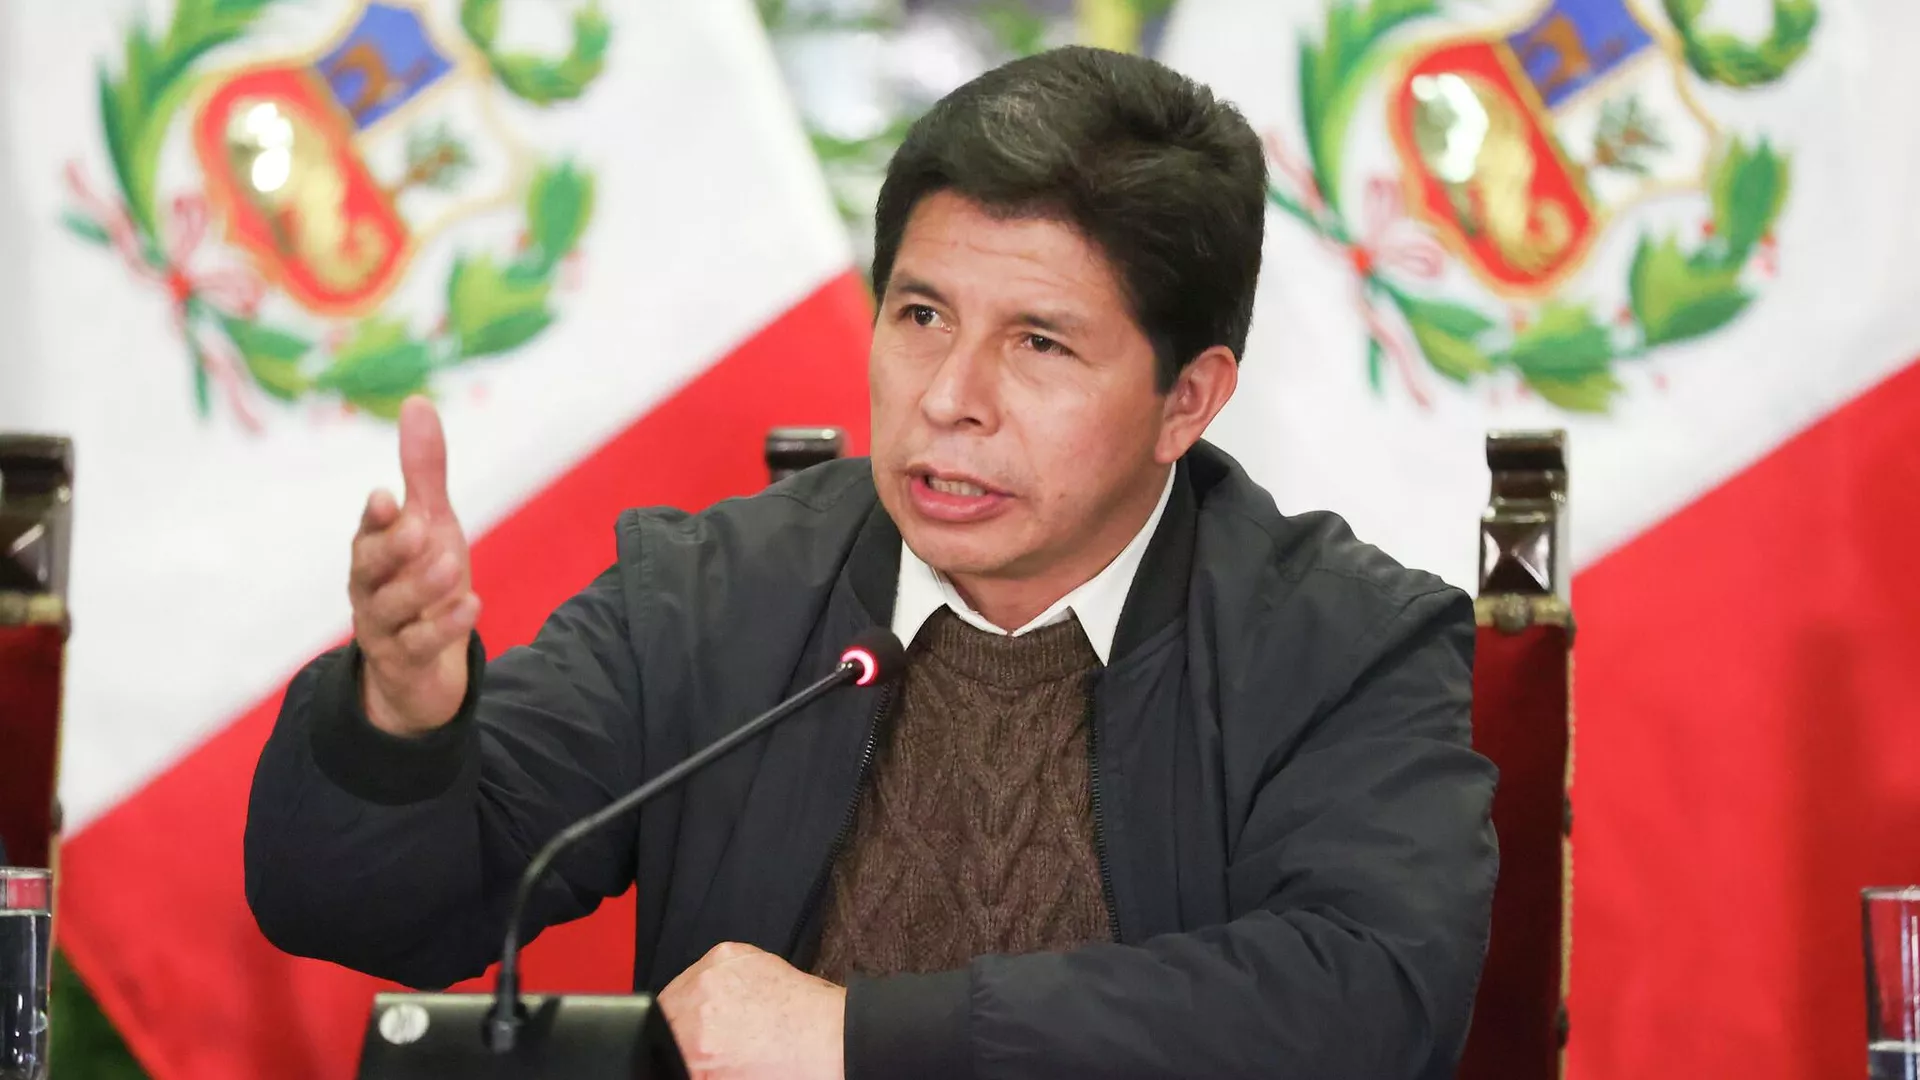  El presidente peruano disuelve el Congreso e instaura gobierno de excepción